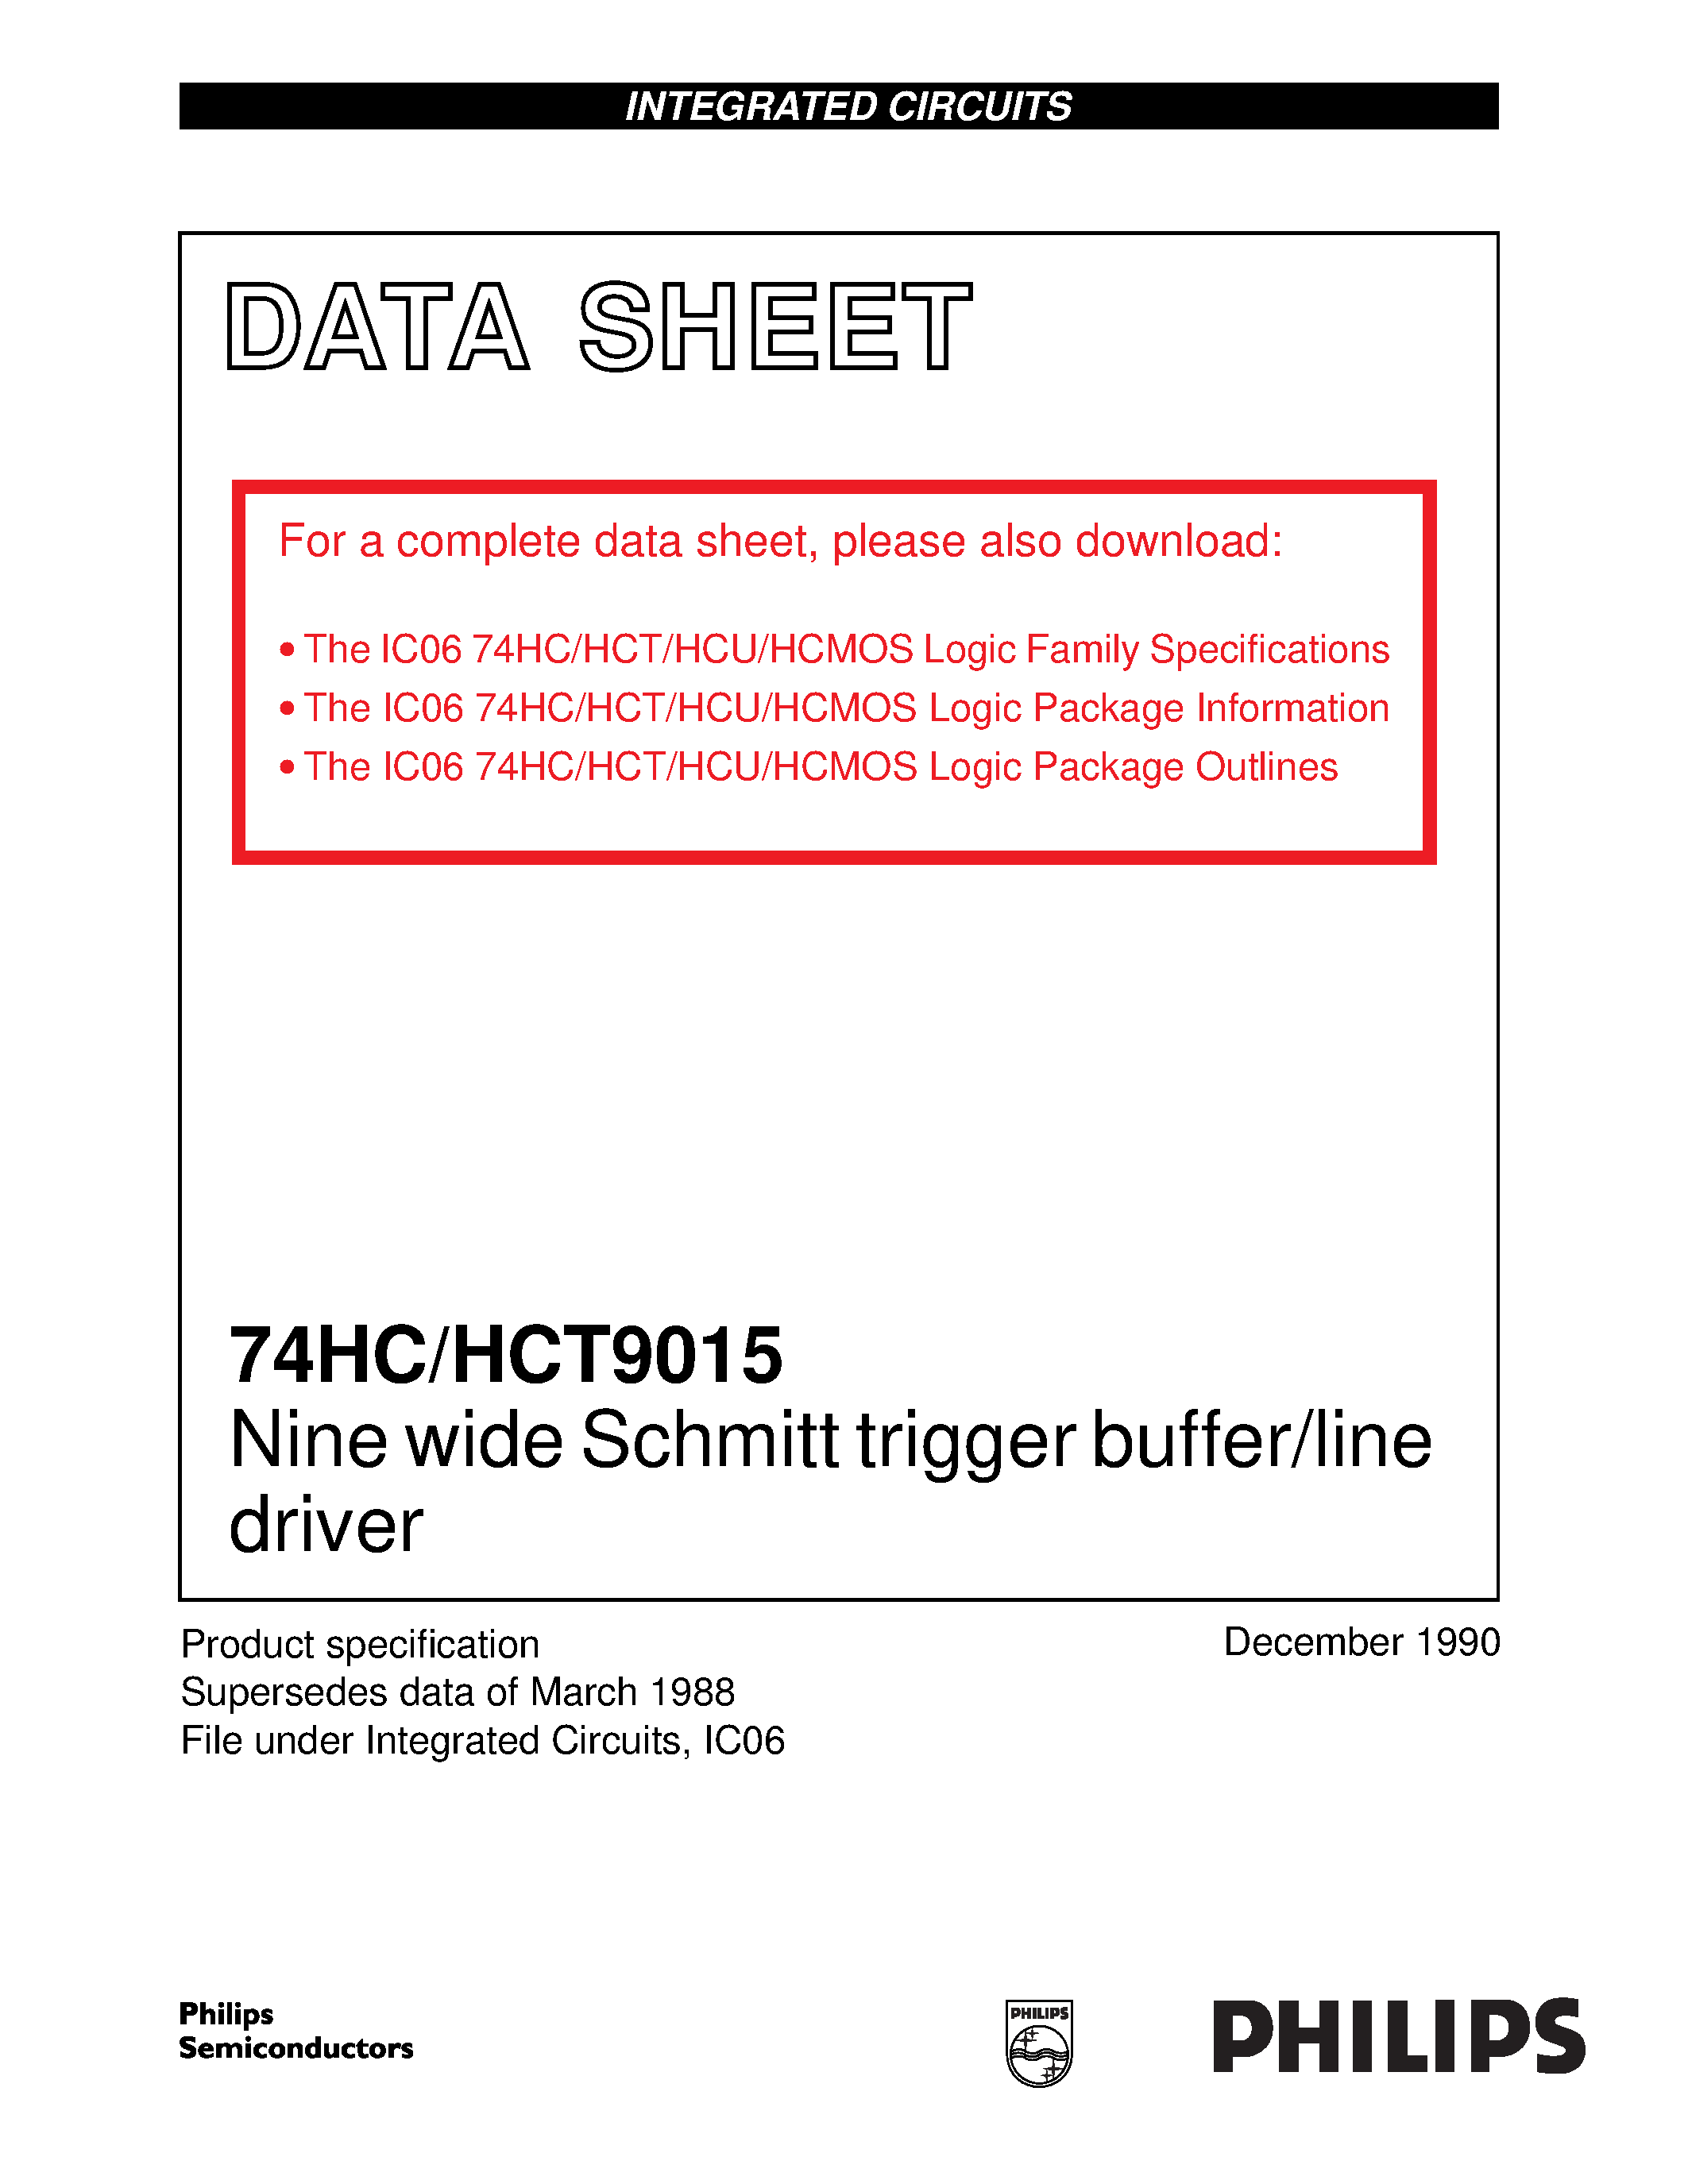 Datasheet 74HCT9015 - Nine wide Schmitt trigger buffer/line driver page 1